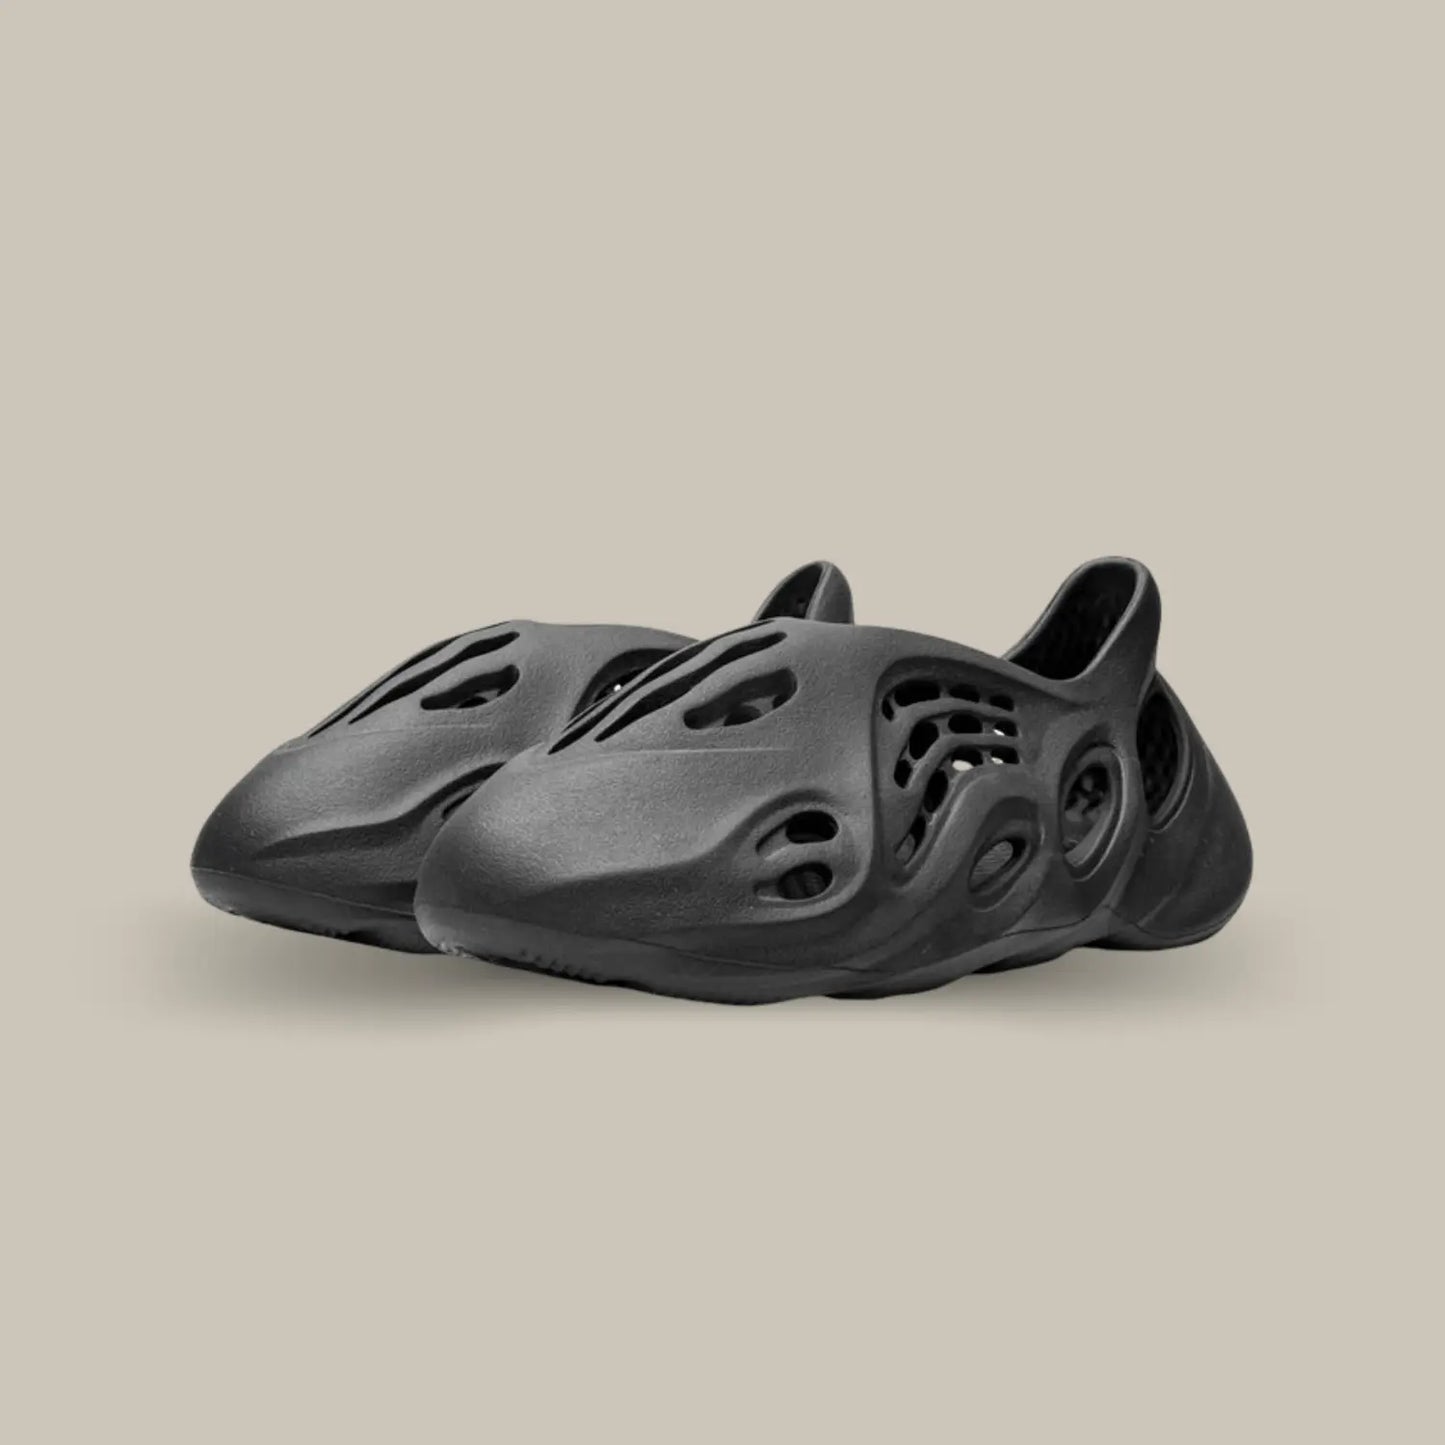 La Adidas Yeezy Foam Runner Onyx possède une structure atypique avec son coloris monochrome noir anthracite, on retrouve la célèbre mousse EVA pour assurer un confort sans égal.